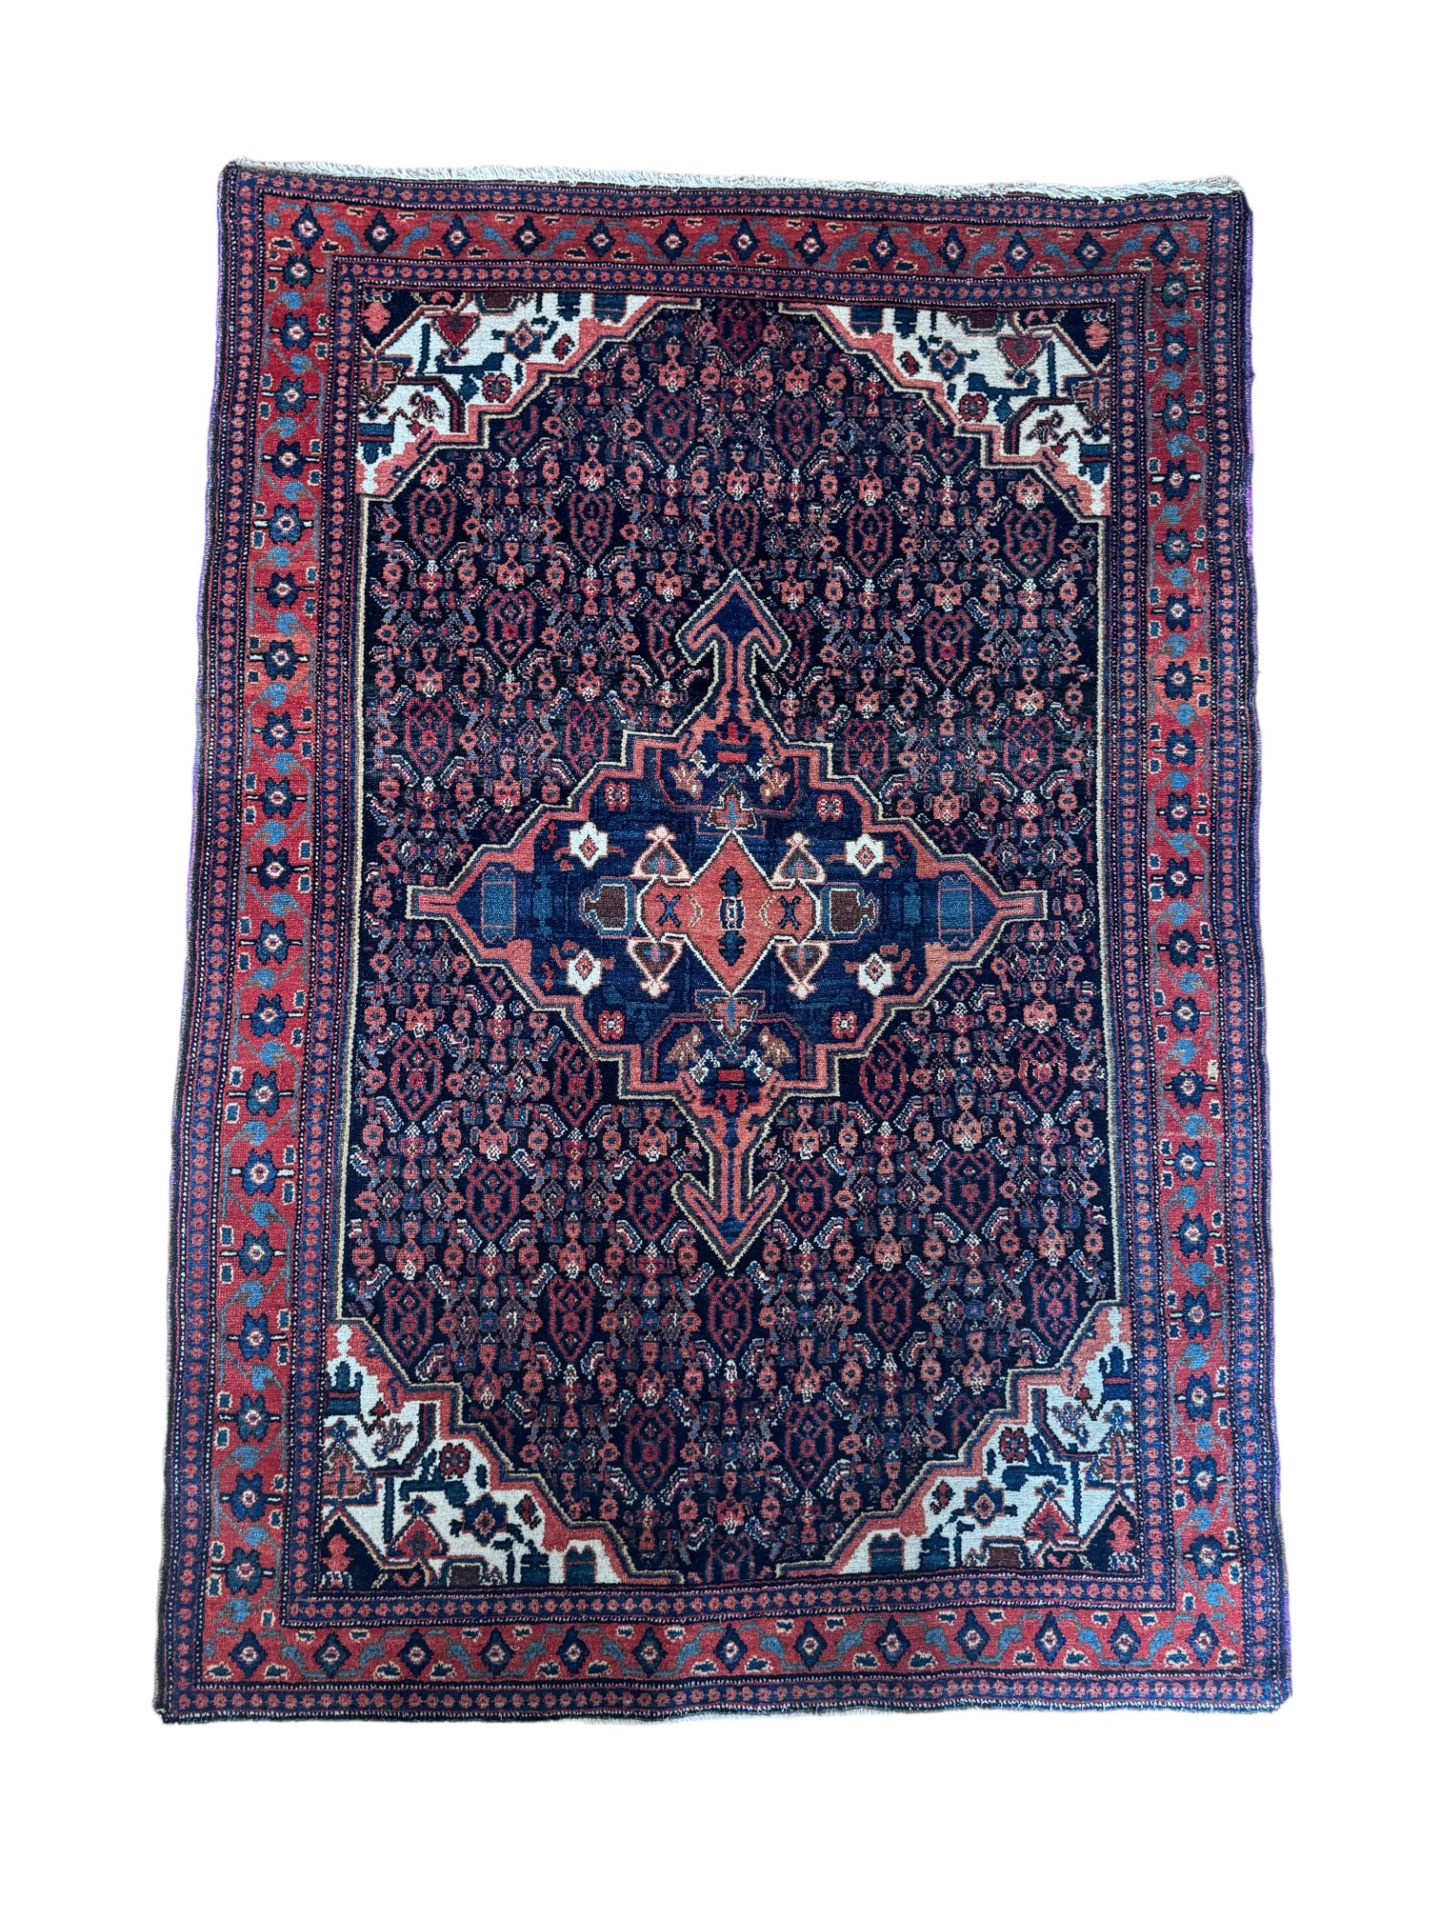 A Senneh rug, Persia, circa 1890